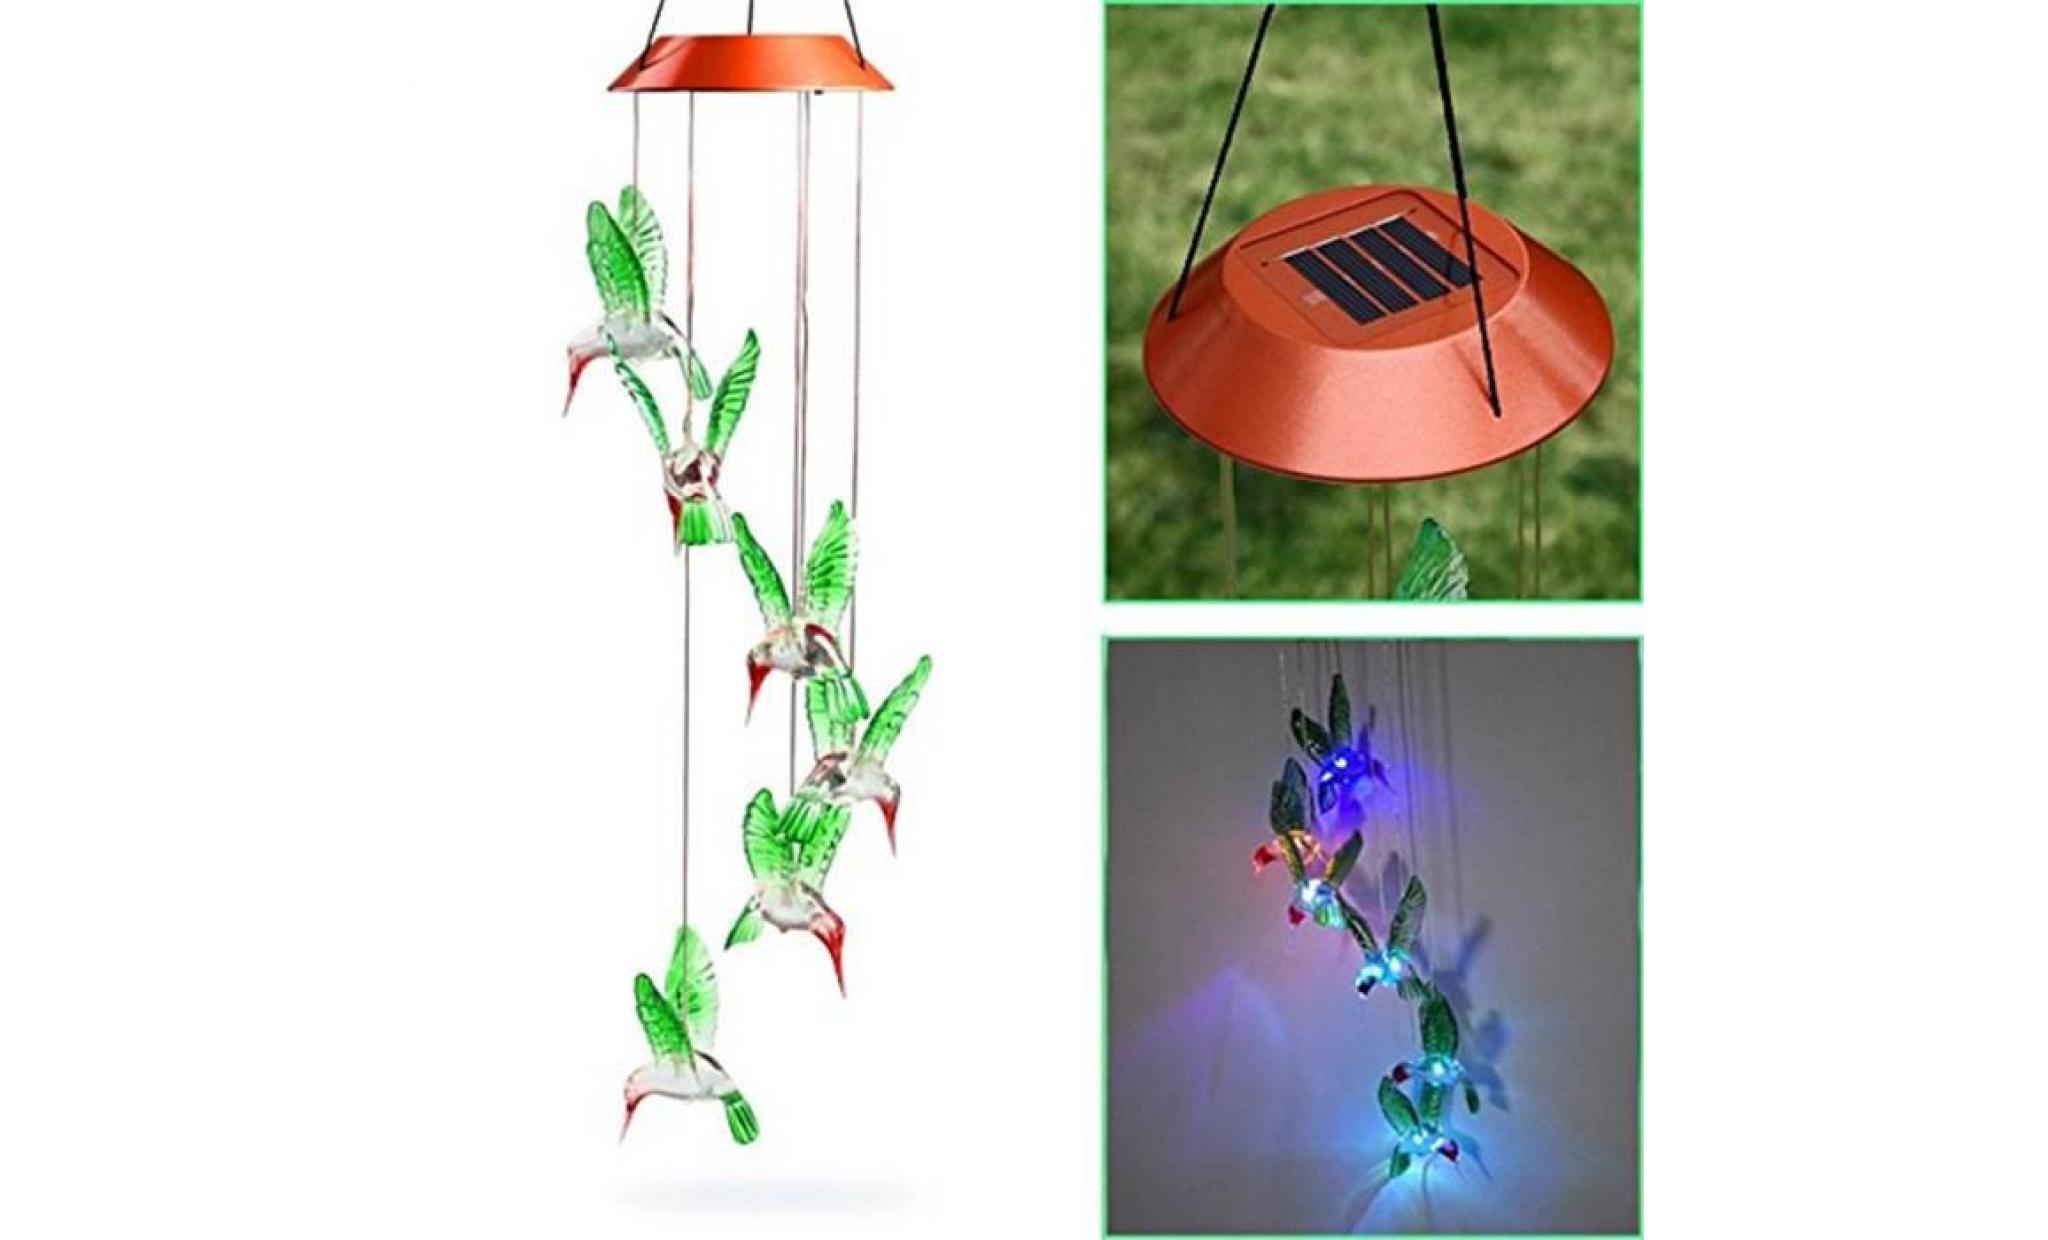 amyamyi@couleur changeant le vent solaire de colibri de carillon de vent de led pour l'éclairage de jardinage wong2217